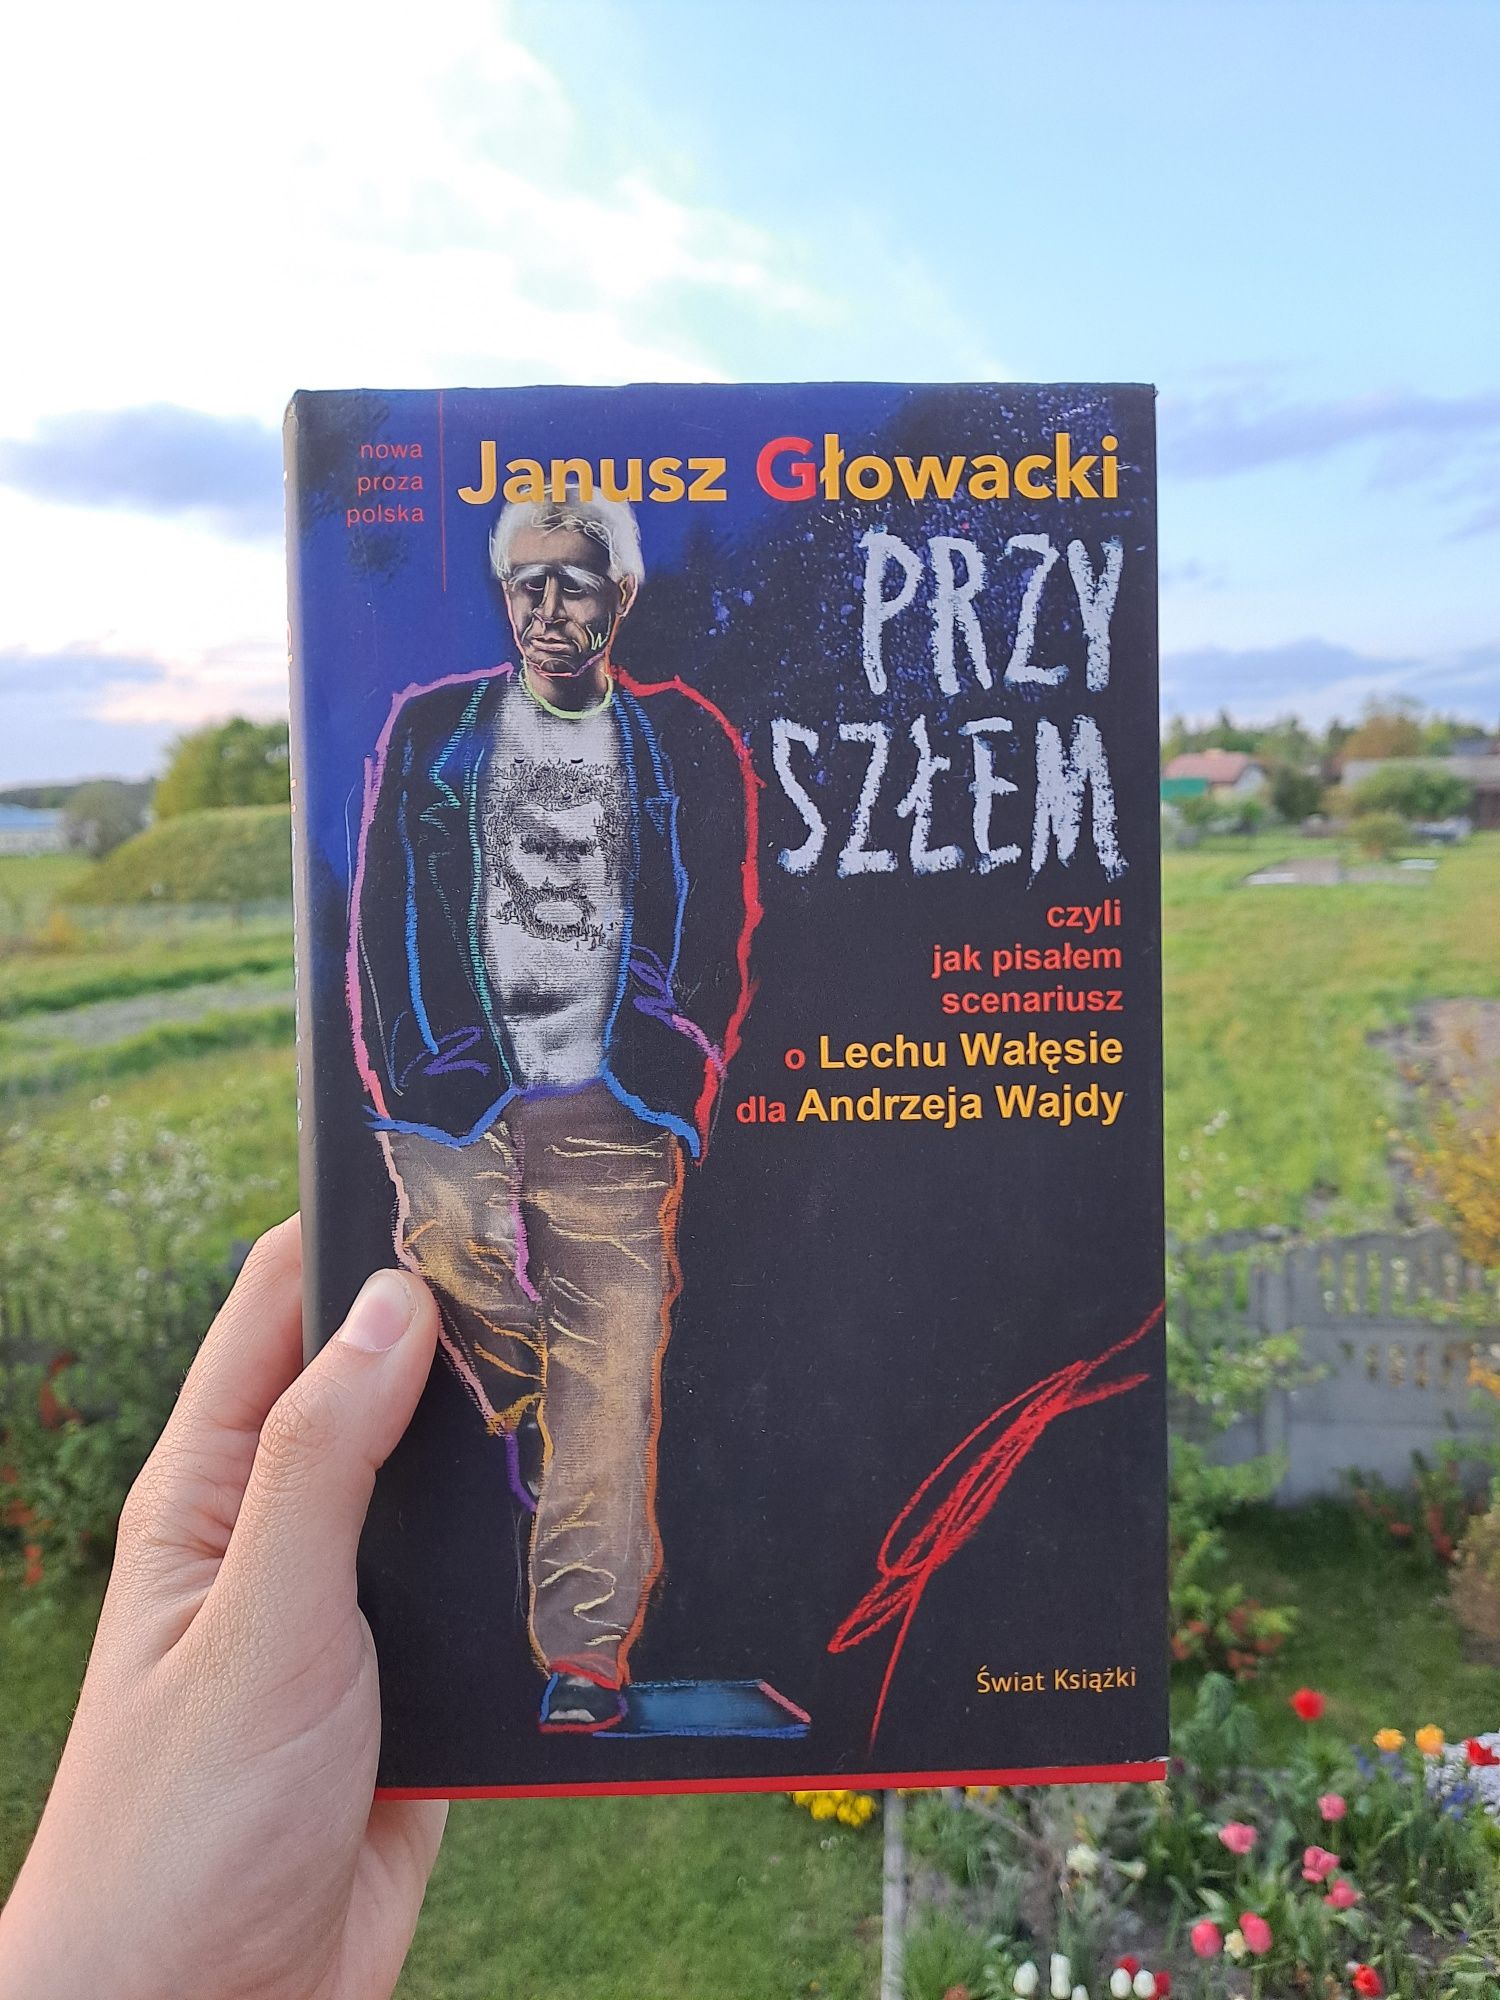 Przyszłem - Janusz Głowacki